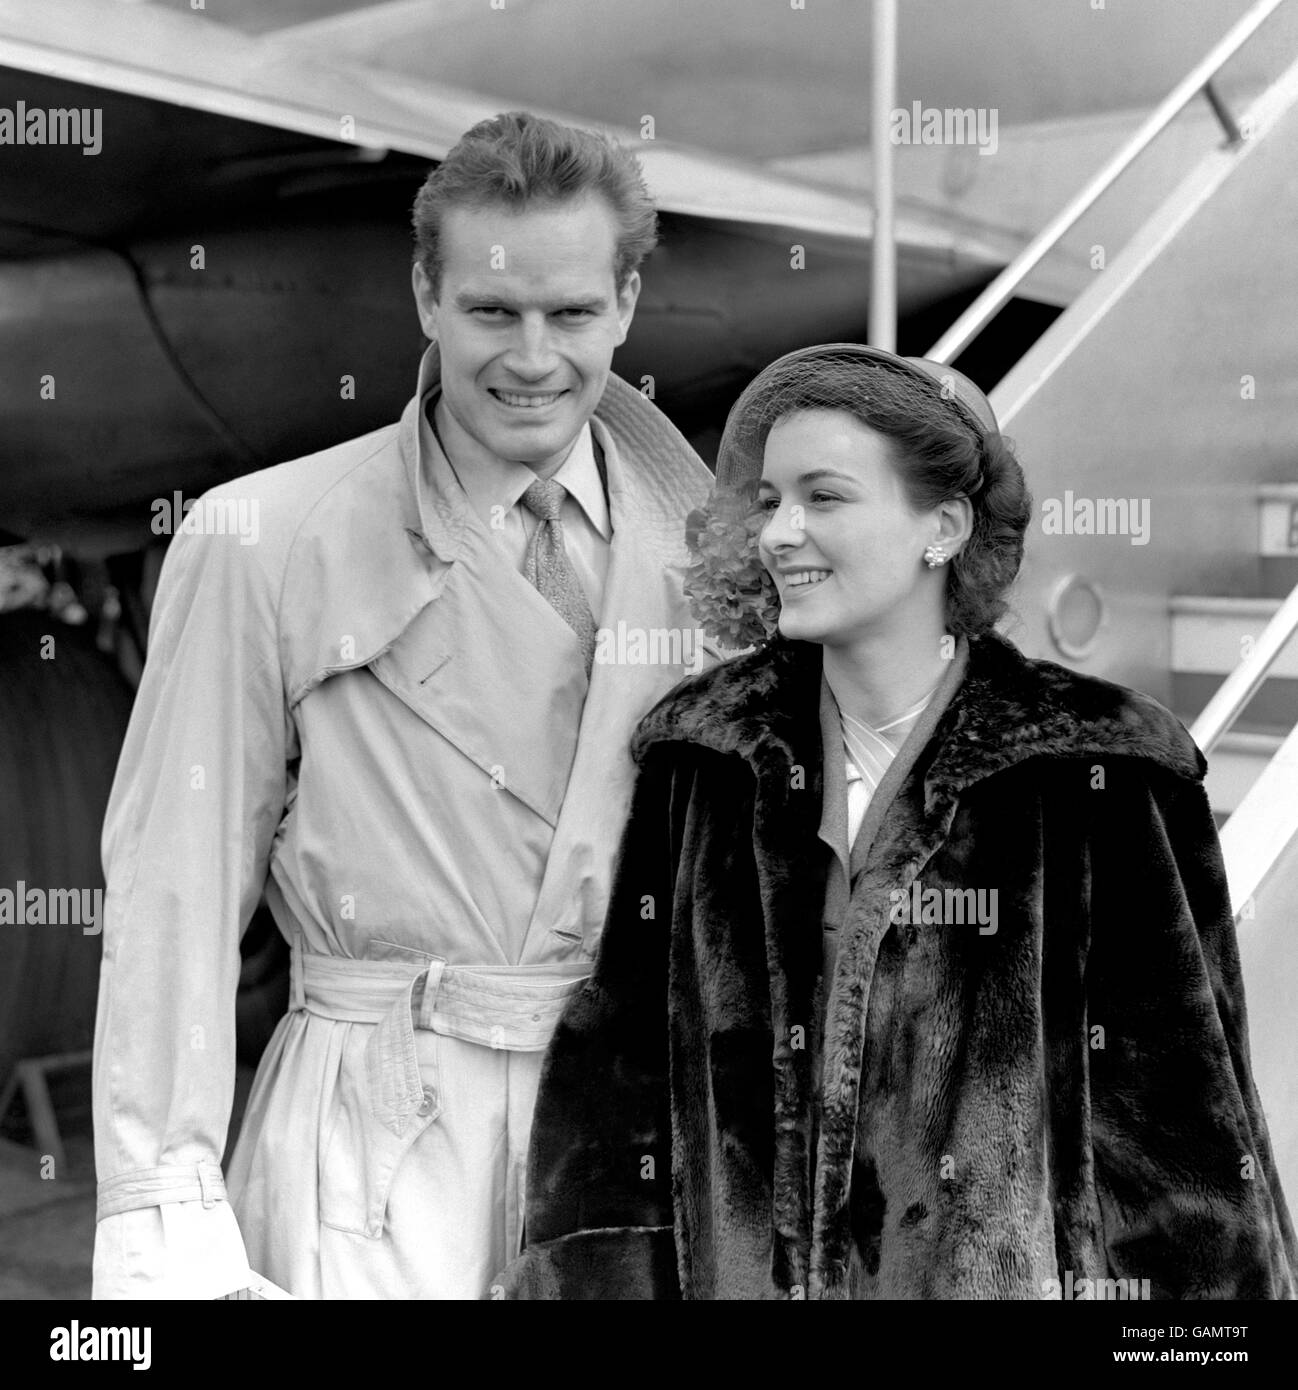 Charlton Heston, Star von Cecil de Milles 'The Greatest Show on Earth', fotografiert mit seiner 28-jährigen Schauspielerin Lydia Heston am Flughafen London. Stockfoto